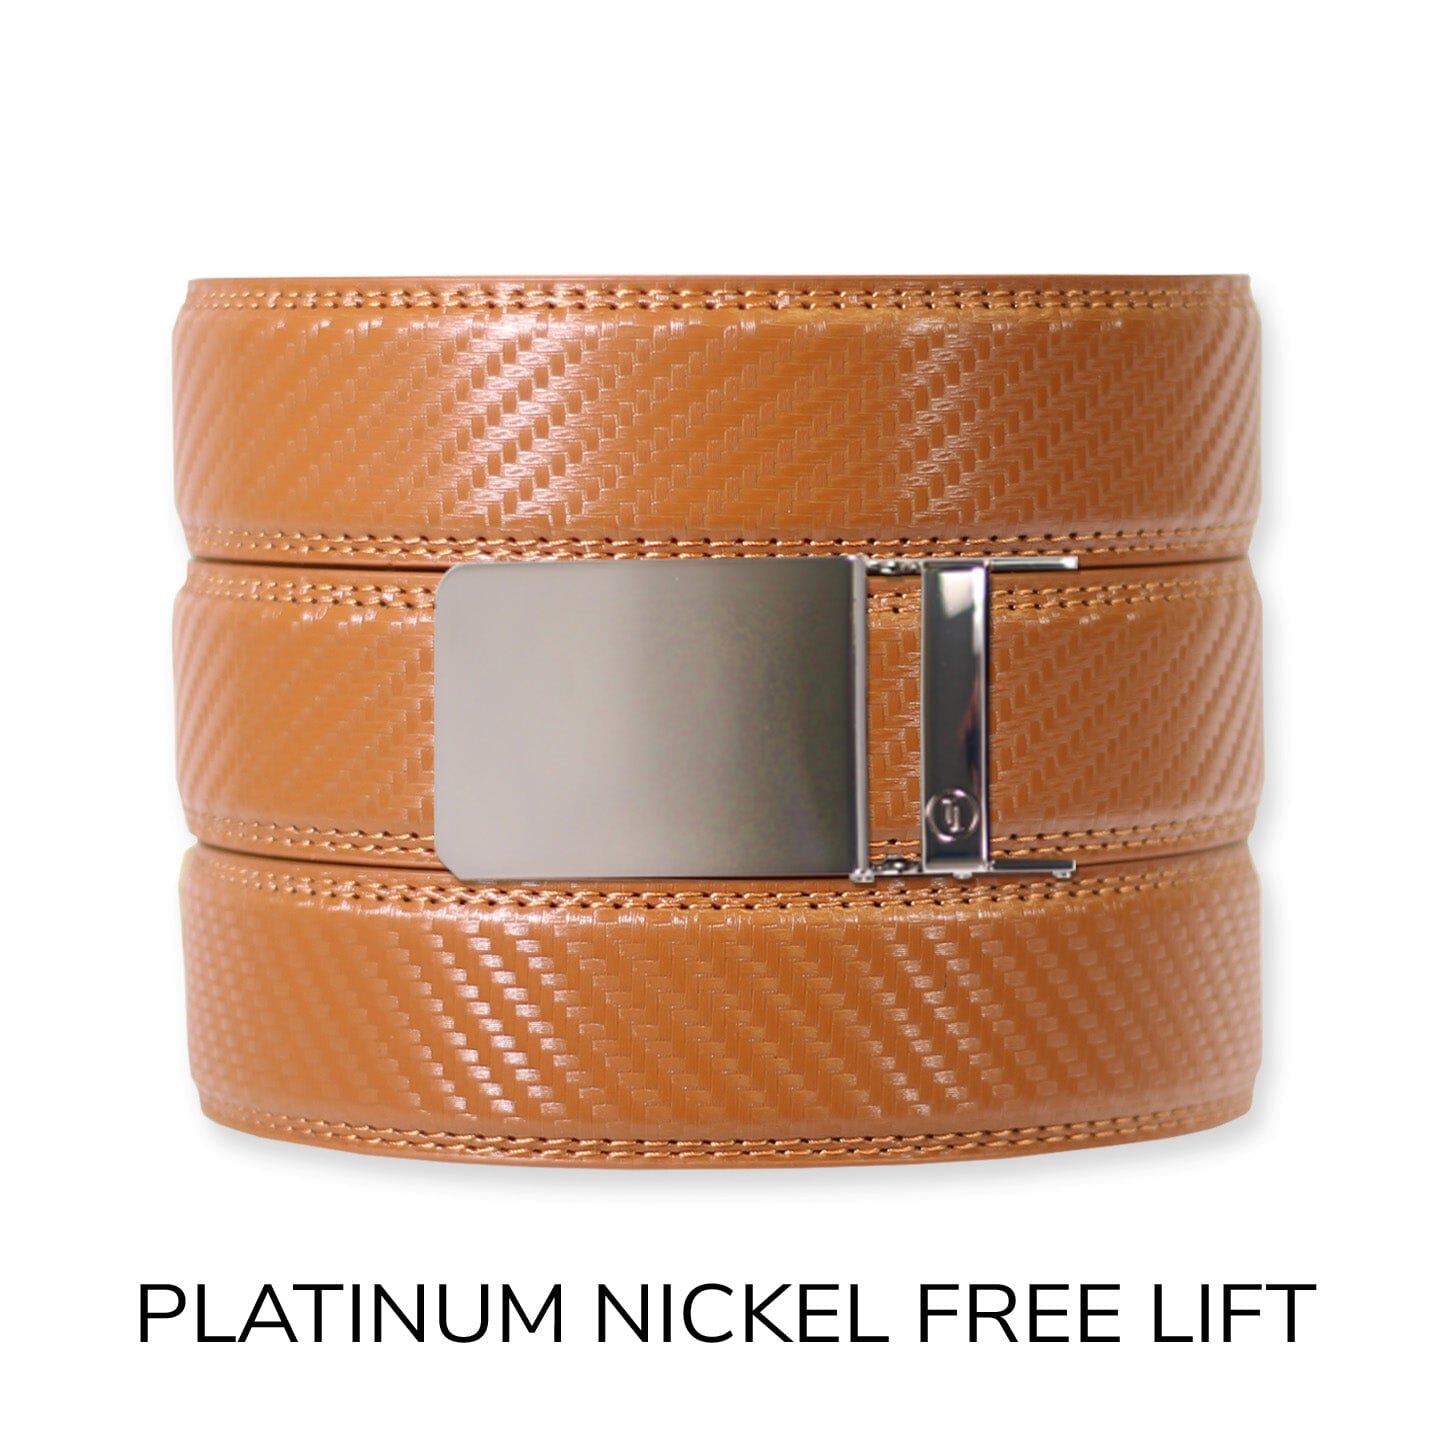 Carbon British Tan Leather Ratchet Belt & Buckle Set